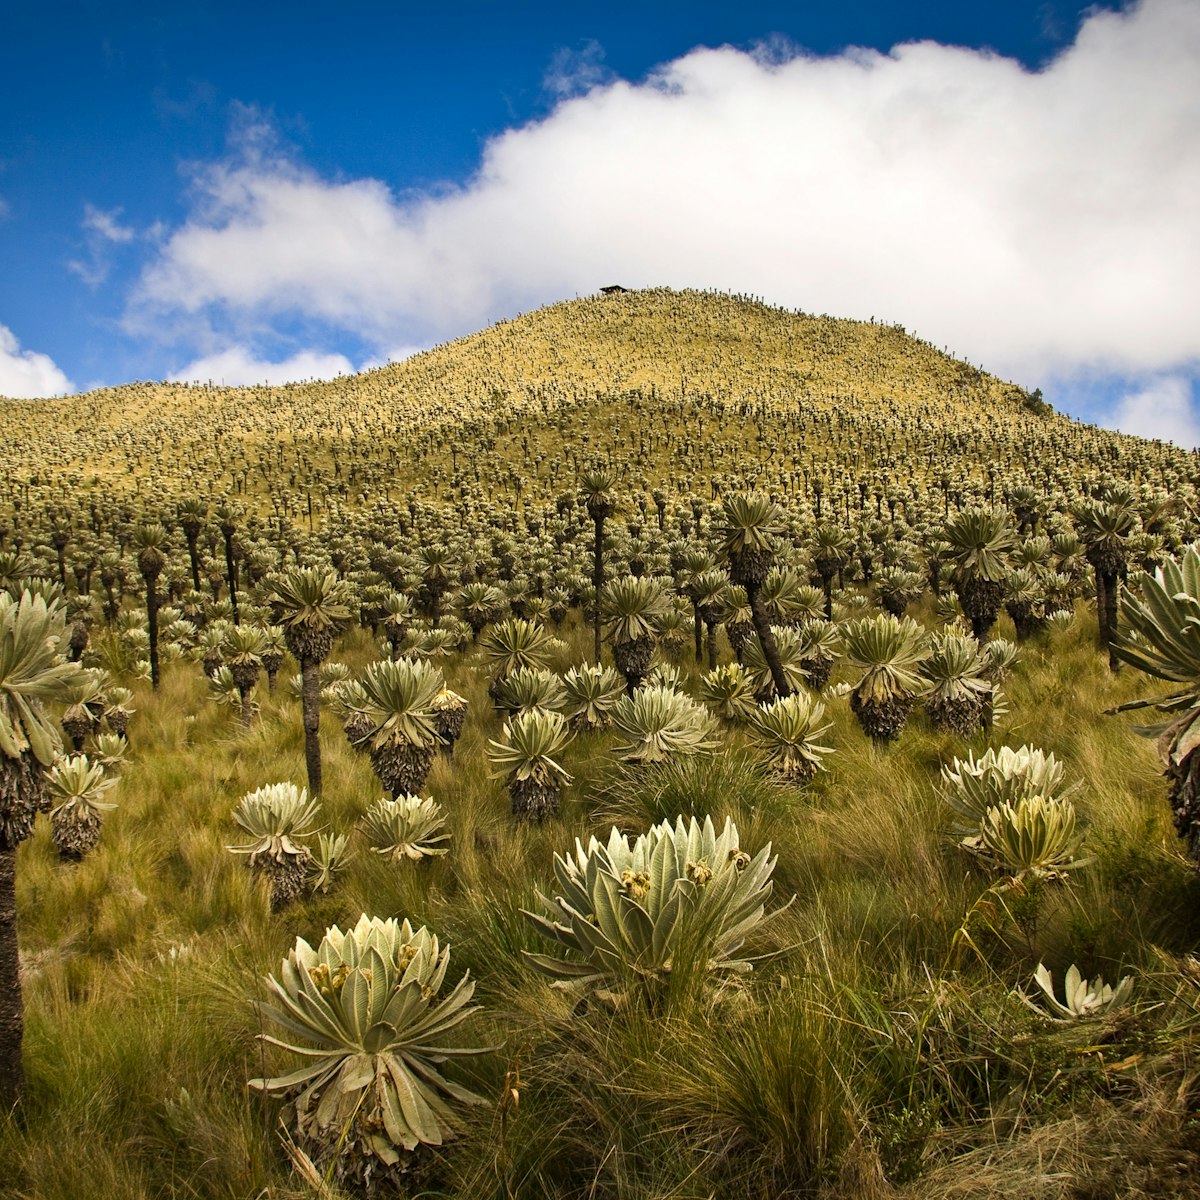 Landscape in El Angel ecological reserve in Ecuador.